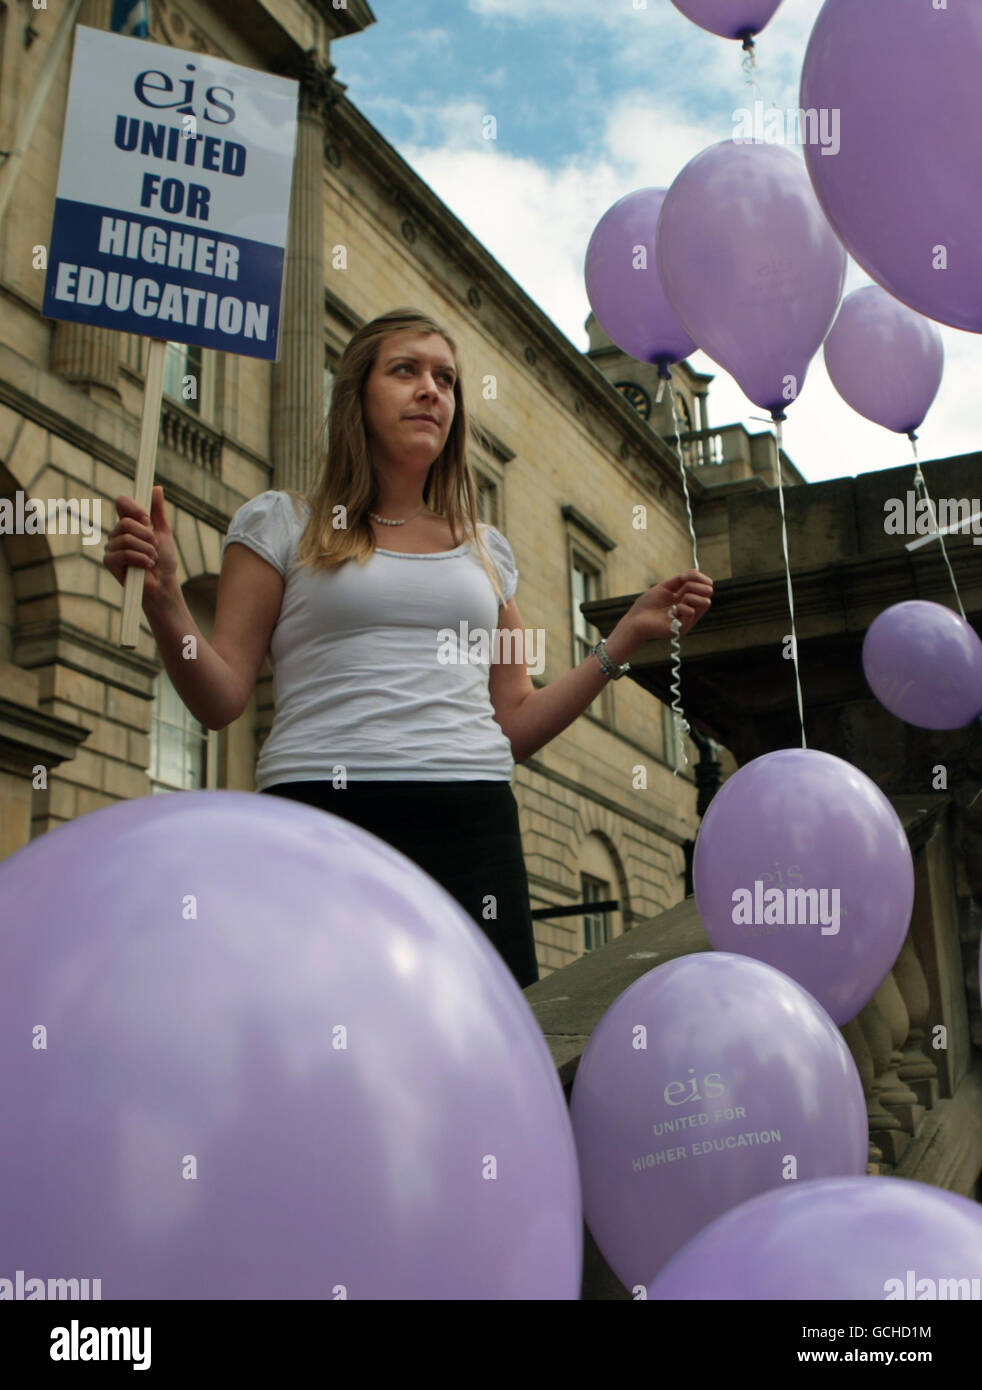 Emma Sikes un rappresentante dell'Istituto di Educazione della Scozia (EIS) partecipa a una giornata d'azione contro i tagli ai finanziamenti per l'istruzione a Edimburgo. Foto Stock